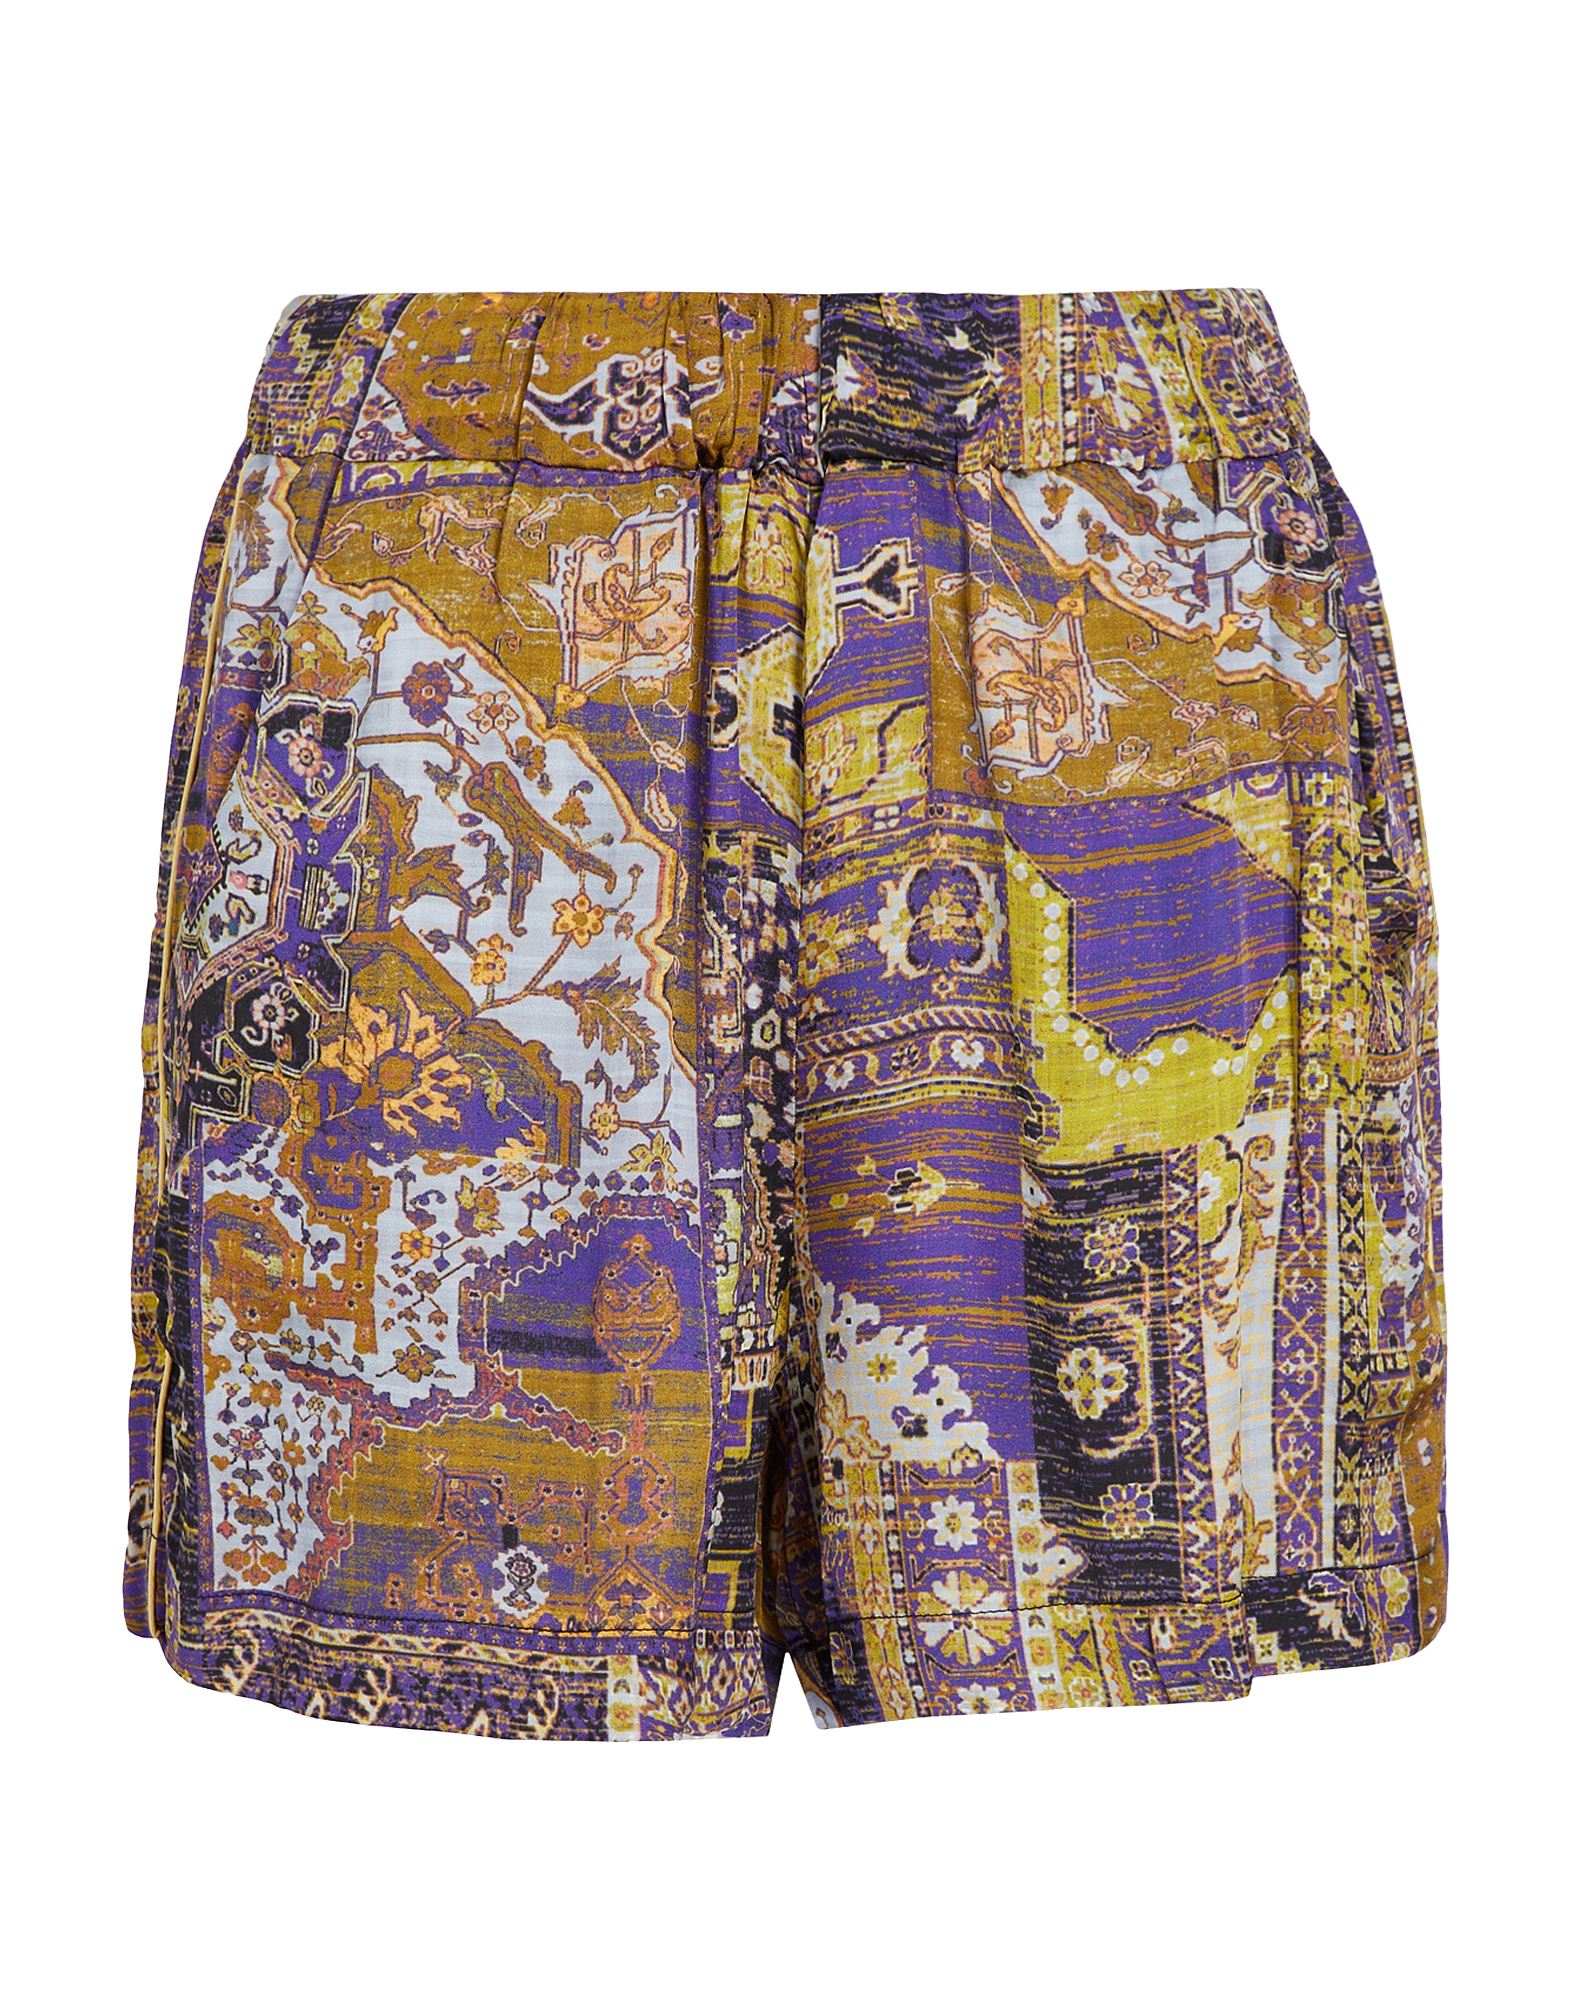 8 By Yoox Printed Viscose Shorts Woman Shorts & Bermuda Shorts Purple Size 6 Viscose